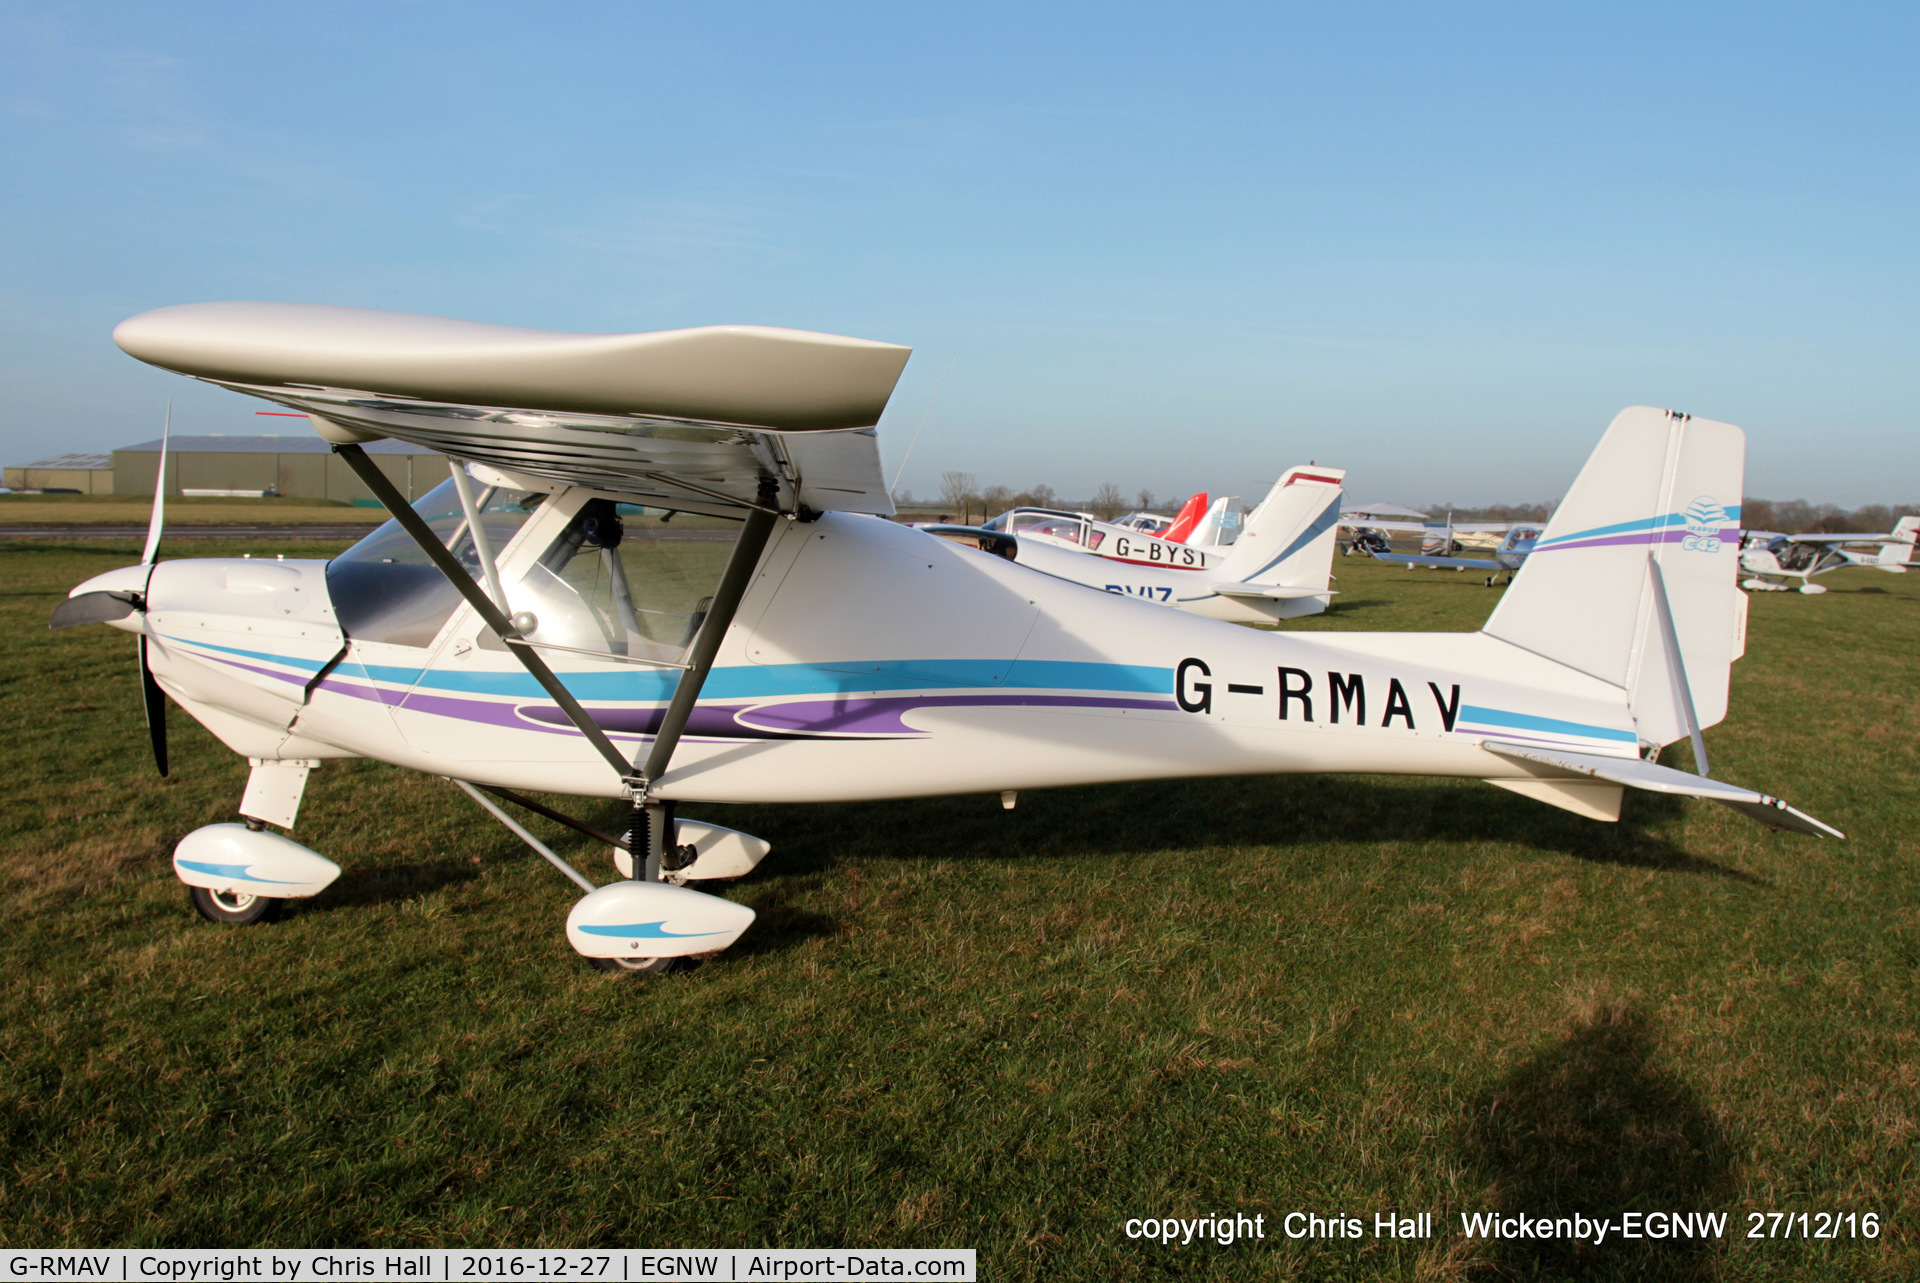 G-RMAV, 2015 Comco Ikarus C42 C/N 1502-7358, at the Wickenby 